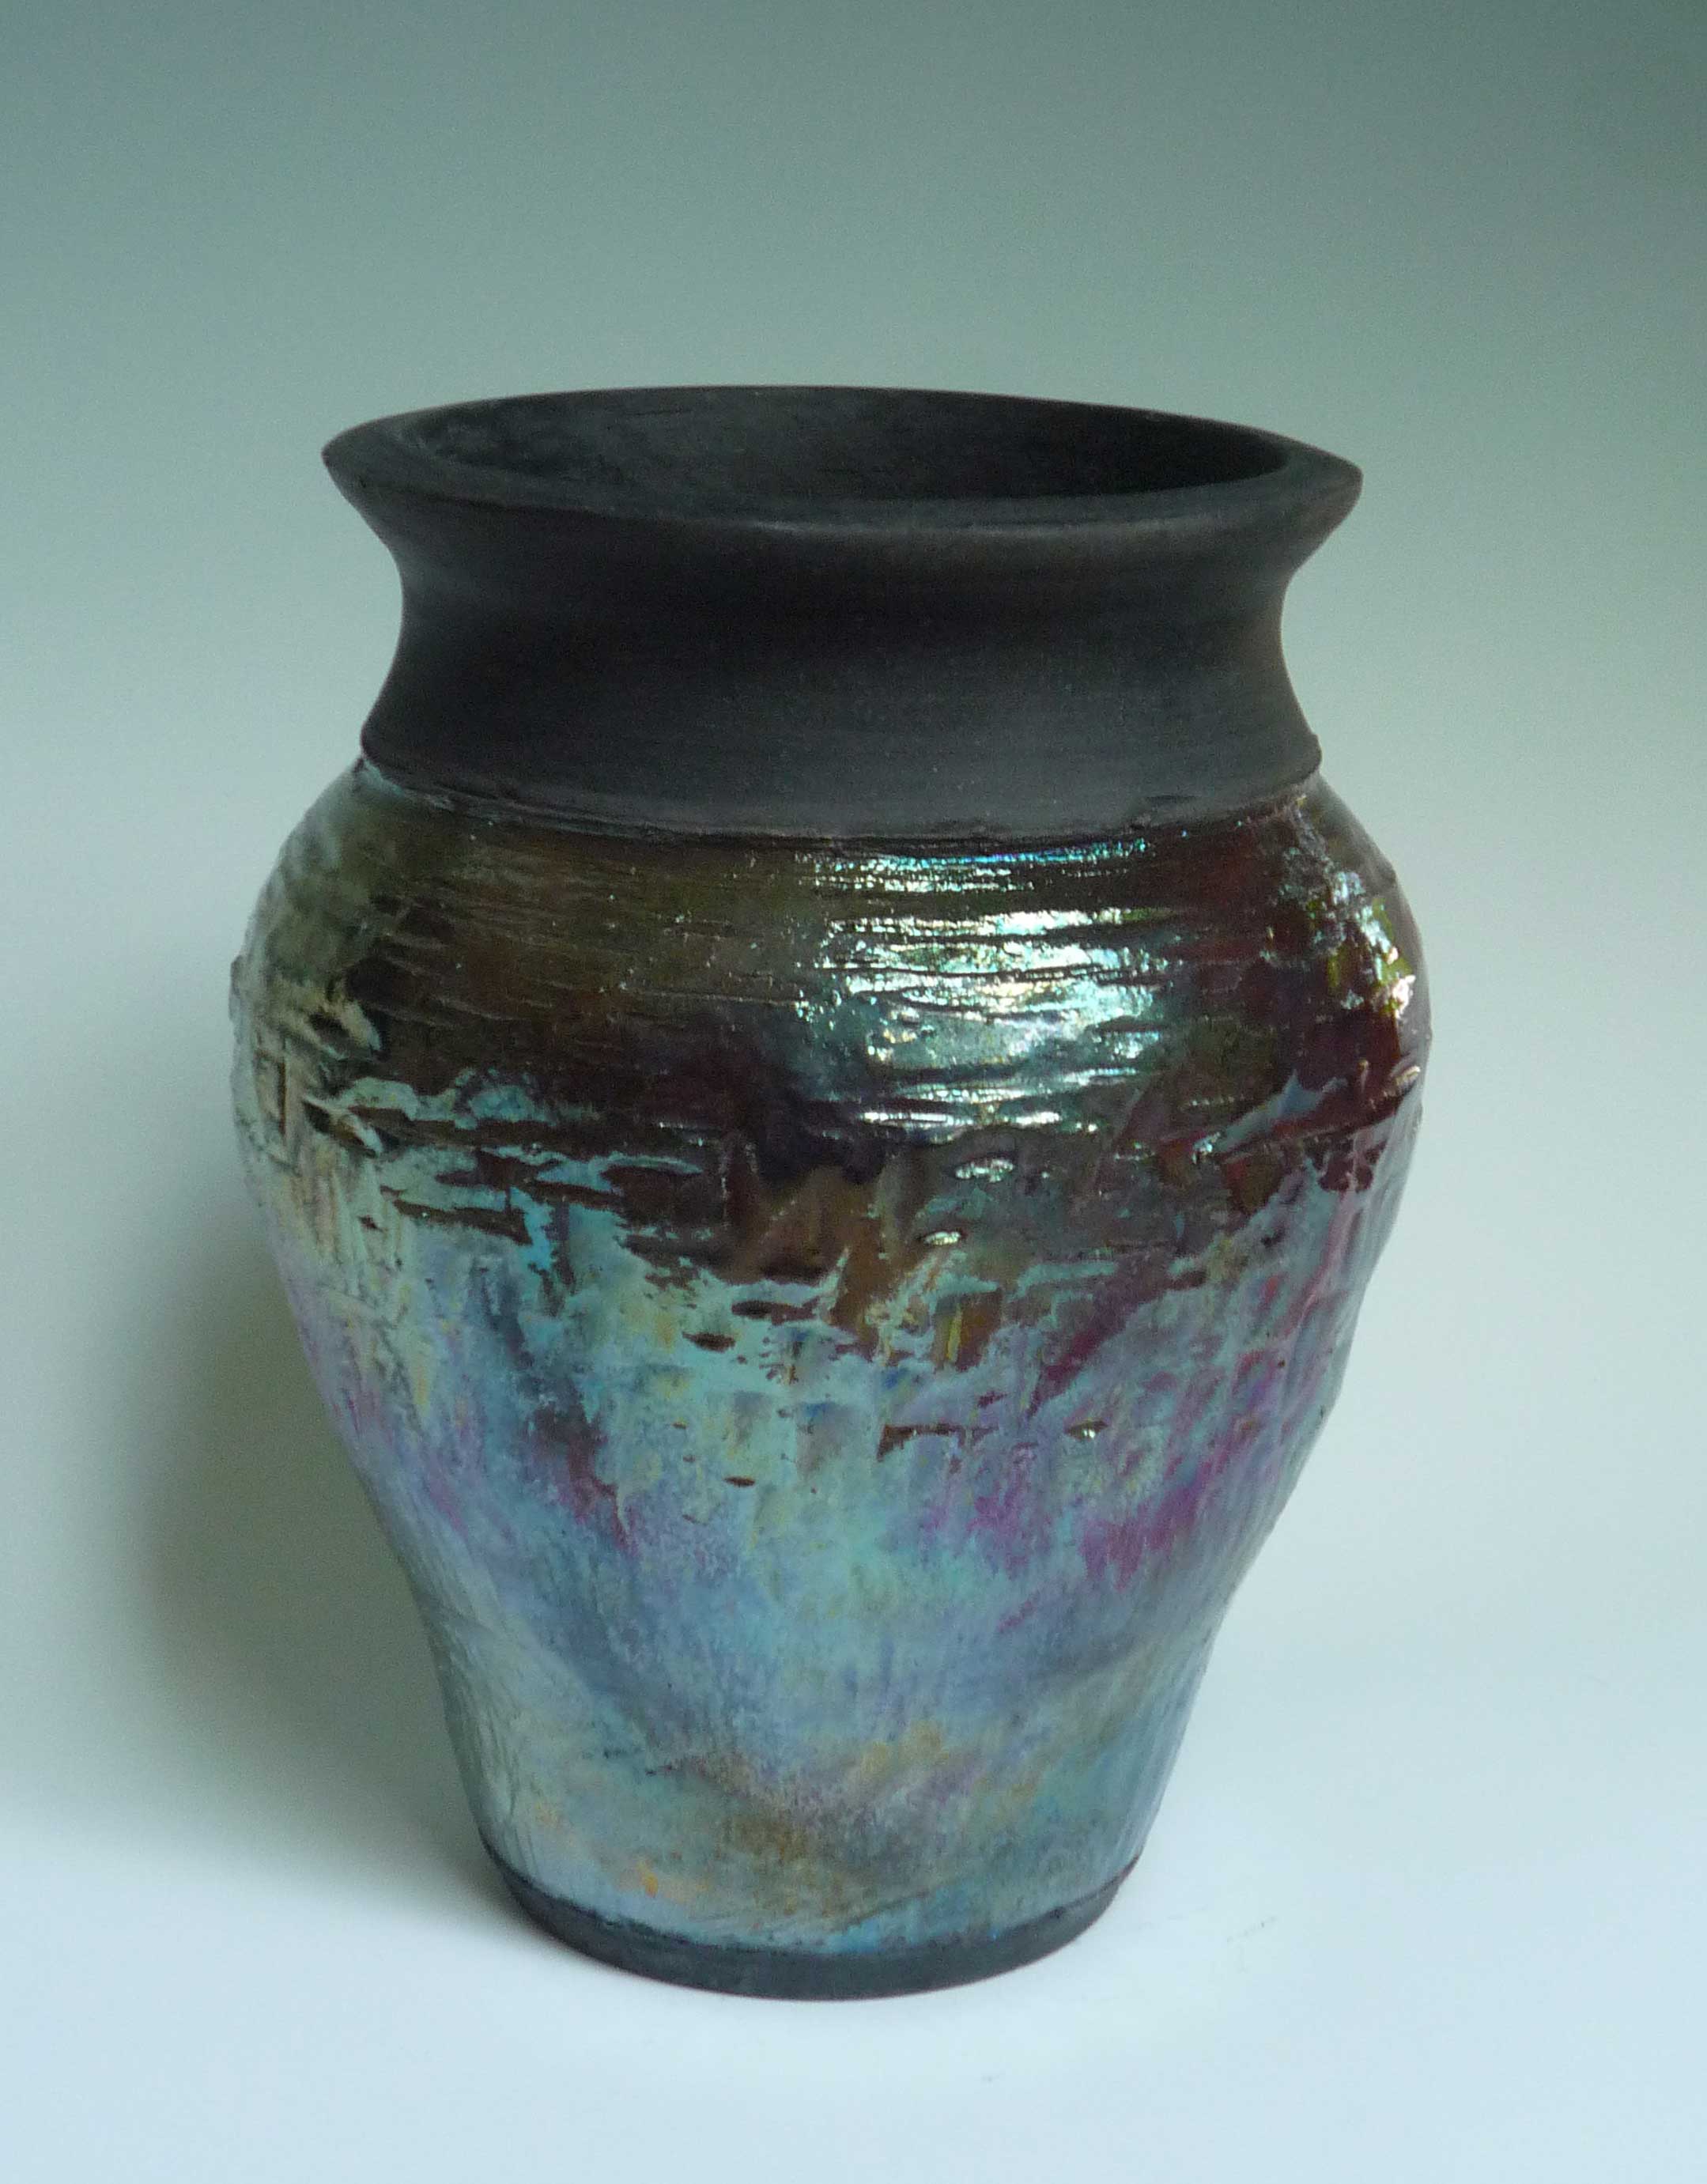 Ruku metalic blue vase